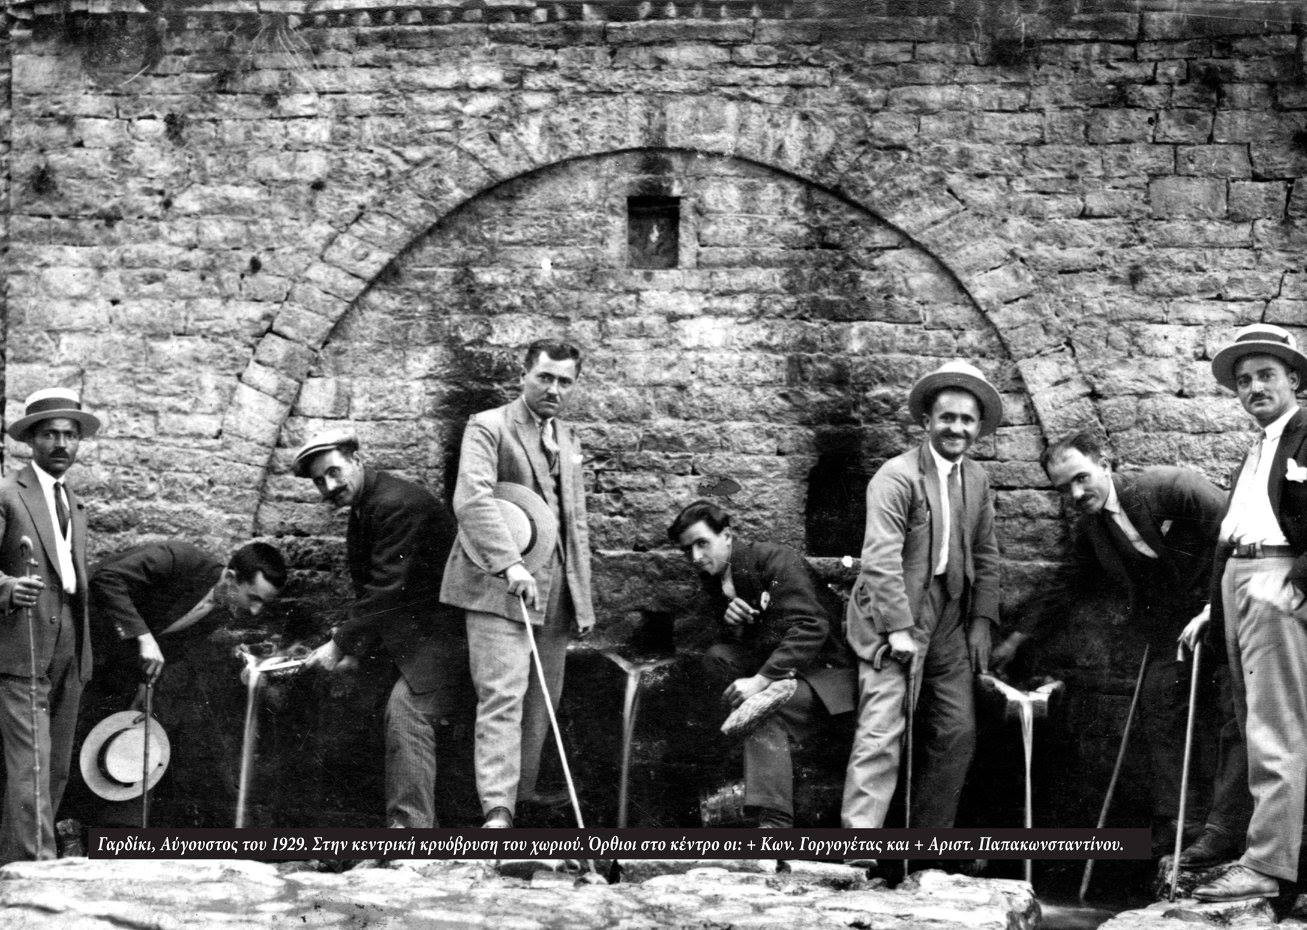 Γαρδίκι, Αύγουστος του 1929. Στη κεντρική κρυόβρυση του χωριού. Όρθιοι στο κέντρο οι Κωνσταντίνος Γοργογέτας και Αριστοτέλης Παπακωνσταντίνου. Από το αρχείο του Σωτήρη Γοργογέτα